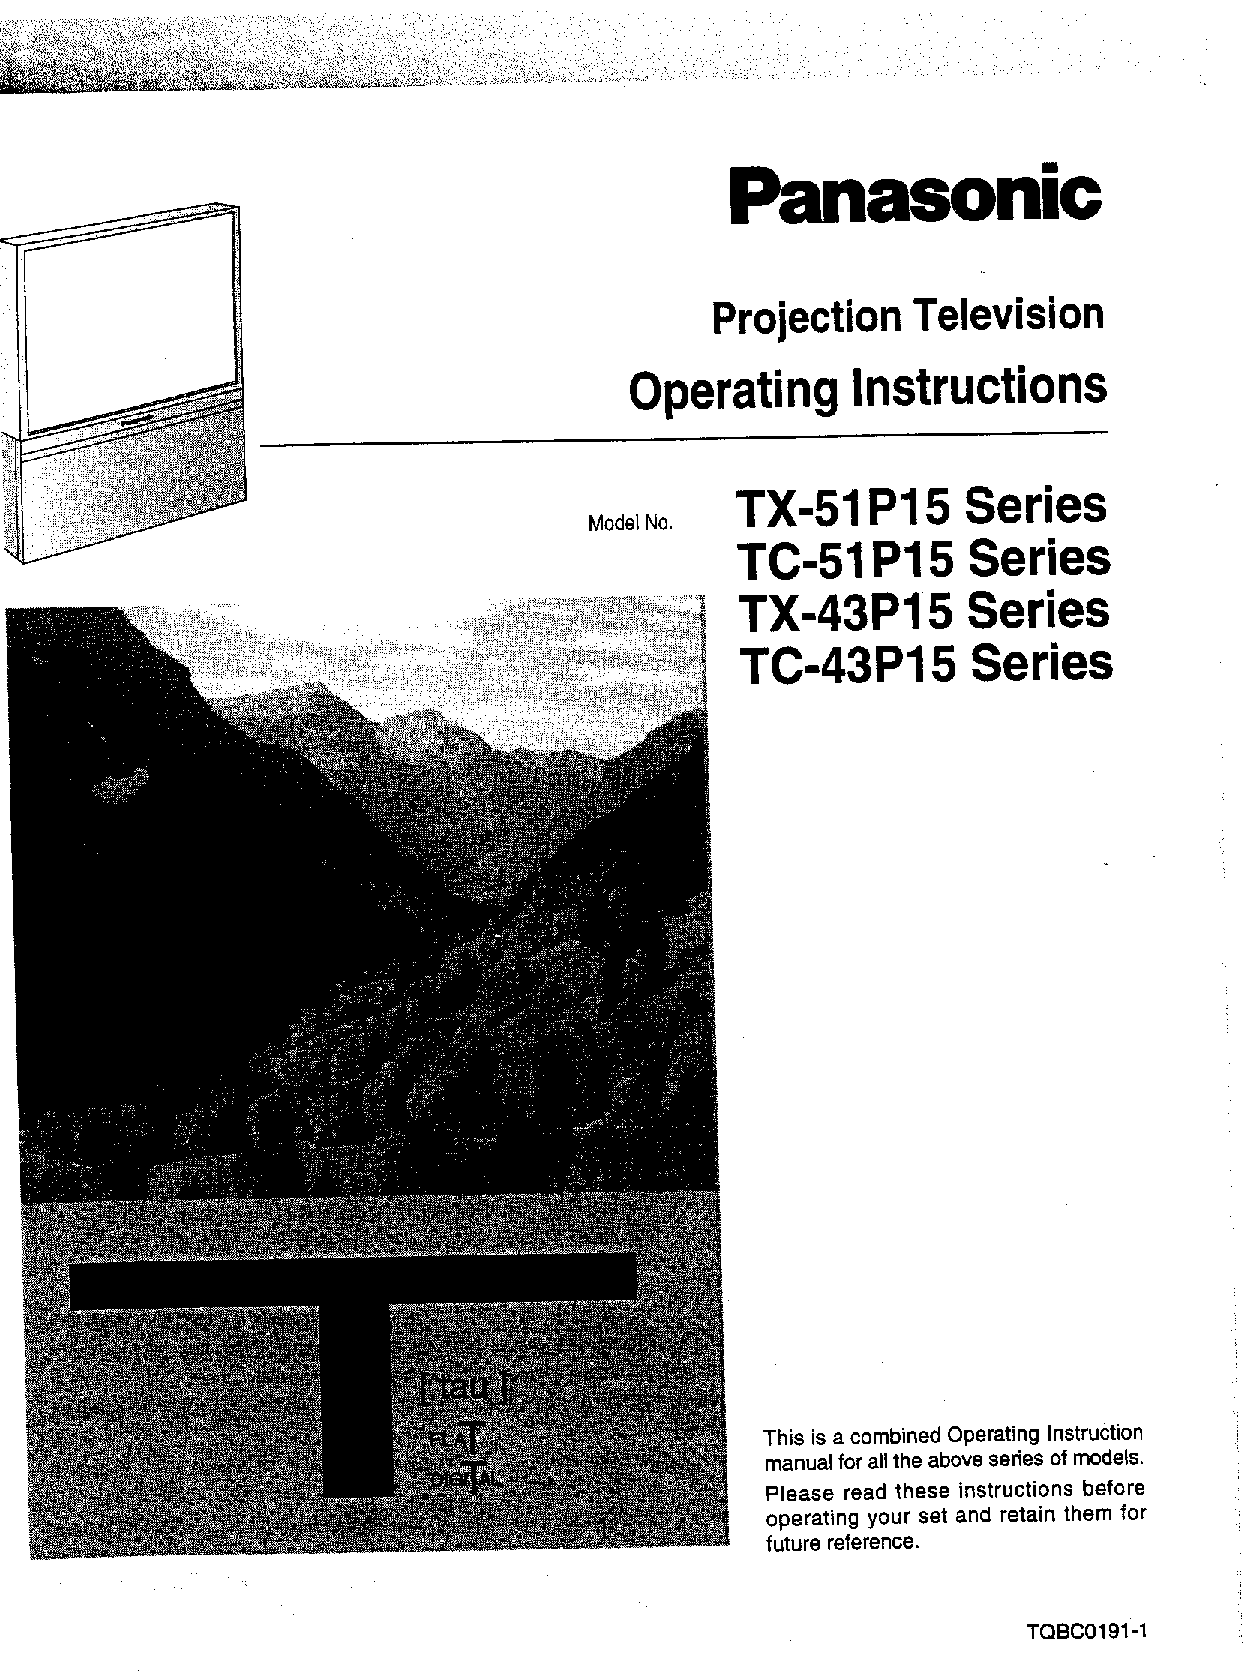 Panasonic TC-43P15, TX-51P15, TX-43P15, TC-51P15 User Manual